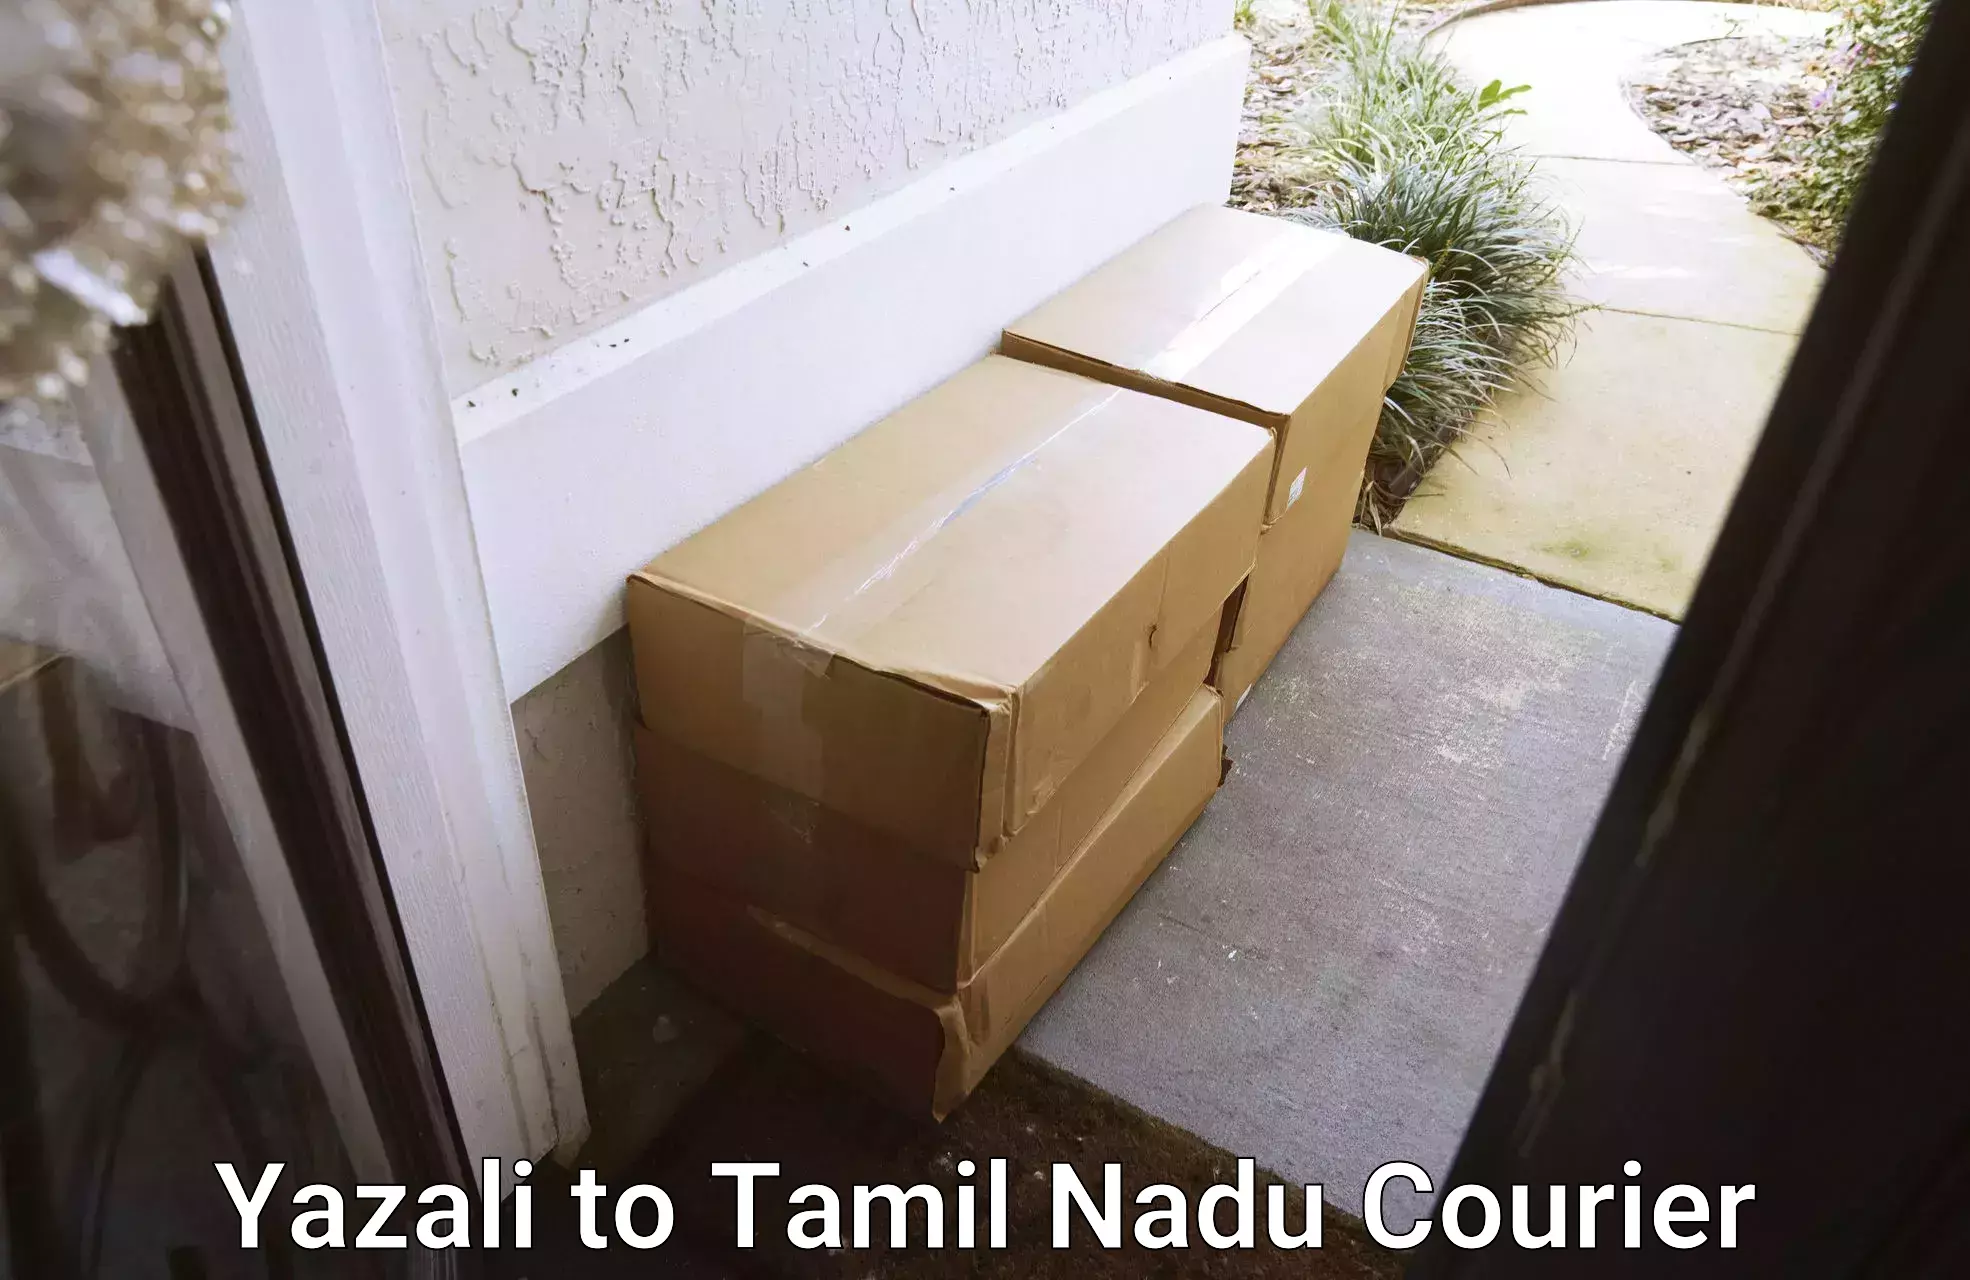 Versatile courier options Yazali to Oddanchatram